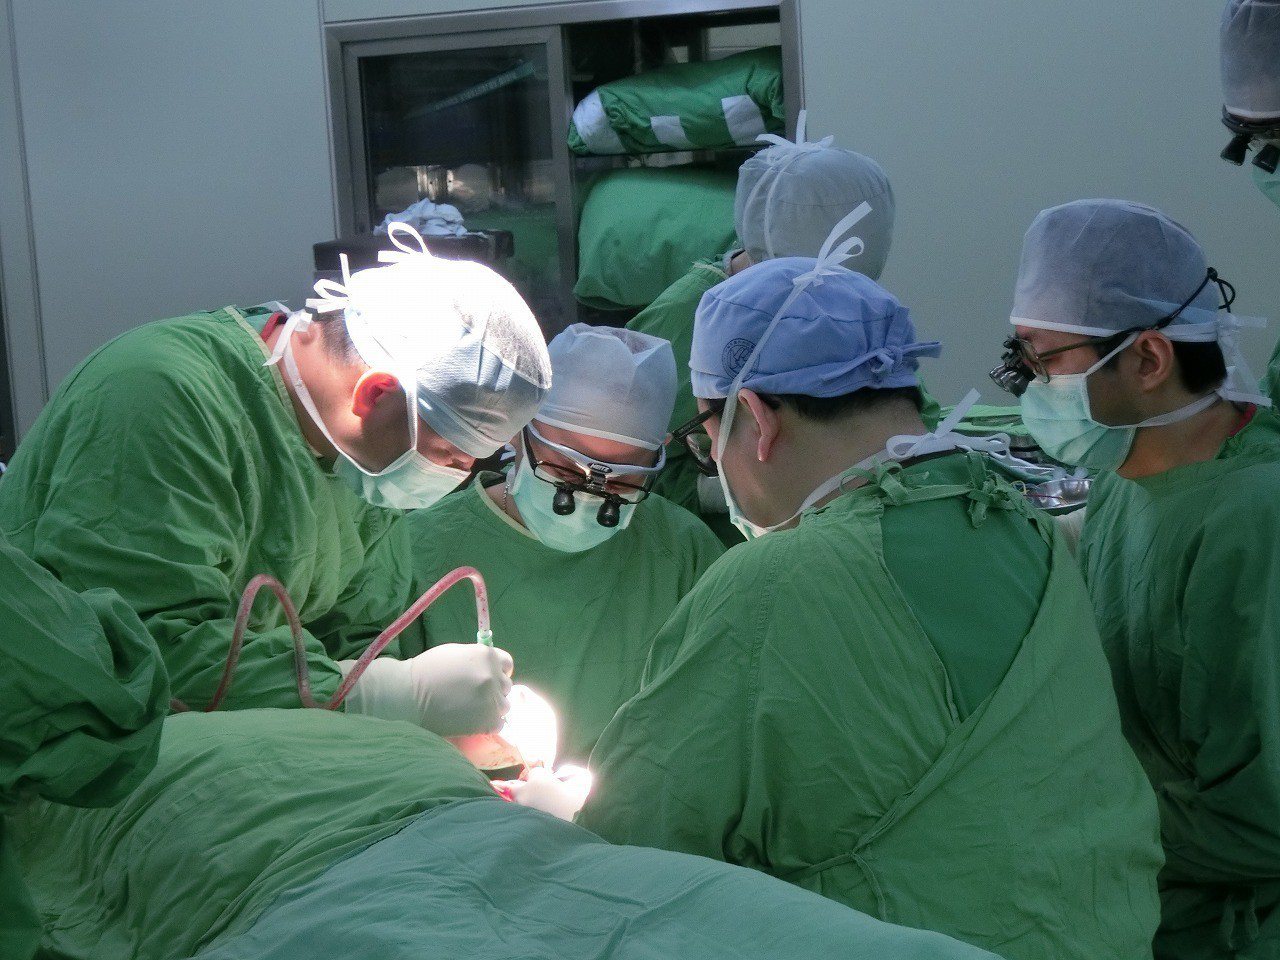 擅長手術且勇於挑戰各種不同術式的杜元坤（左二），總有各地來的研究醫師拜於門下。
